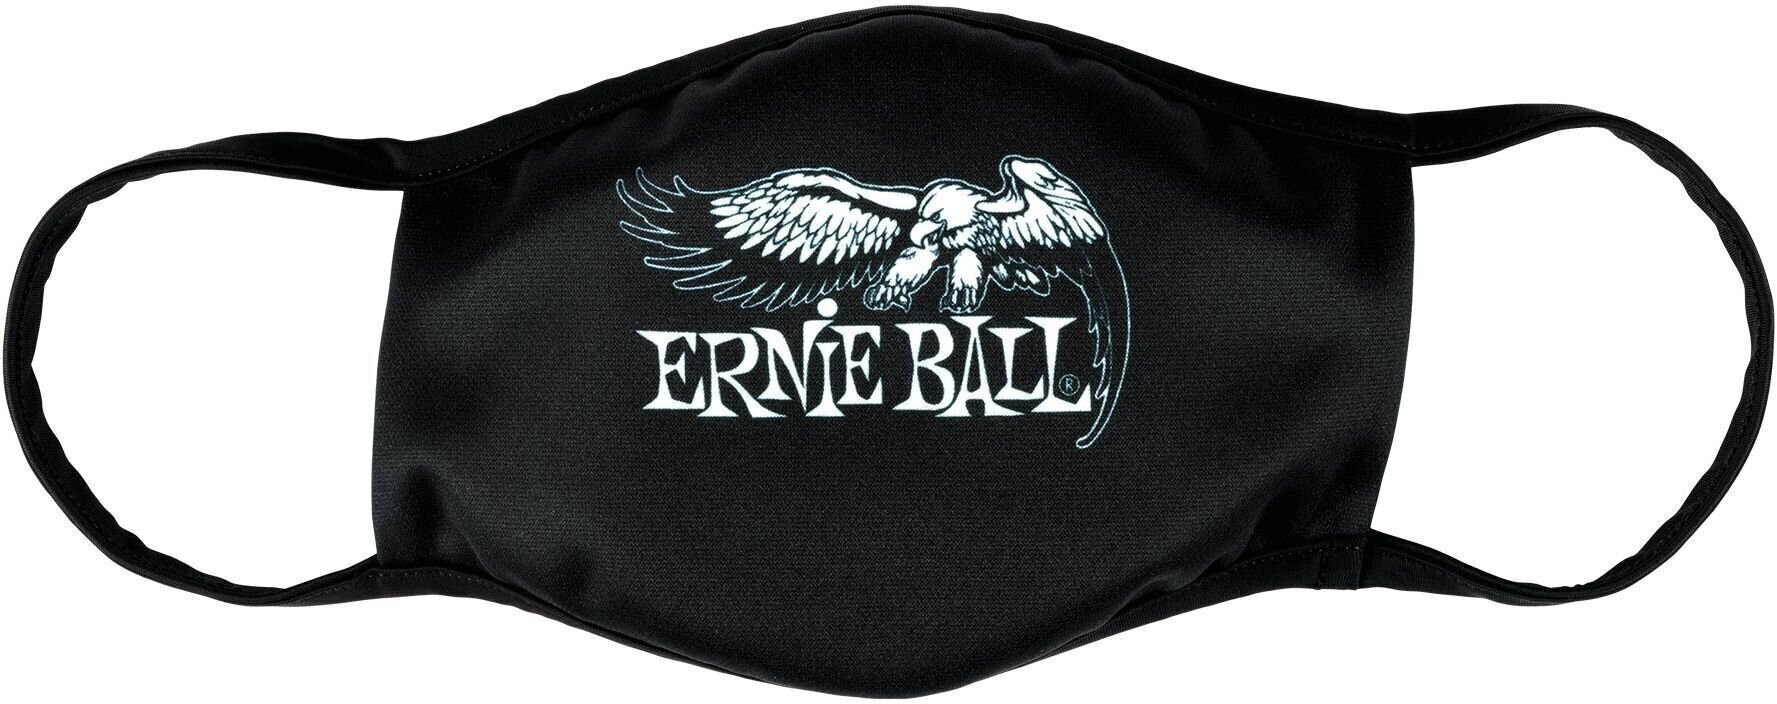 Máscara facial Ernie Ball 4909 Máscara facial